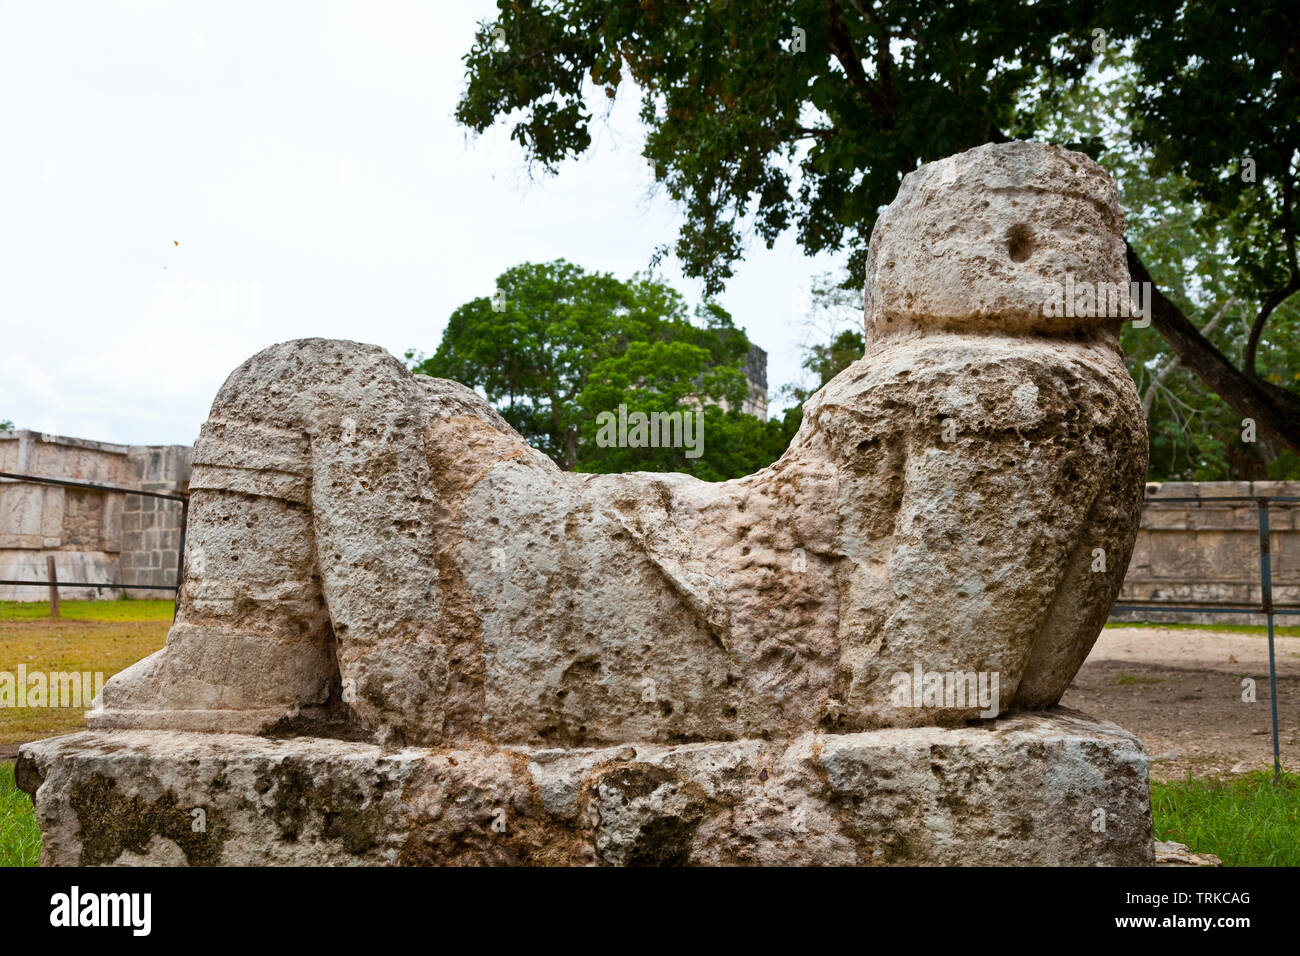 Chacmool o lugar de ofrendas. Yacimiento Arqueológico Maya de Chichén Itzá. Estado de Yucatán, Península de Yucatán, México, América Stock Photo